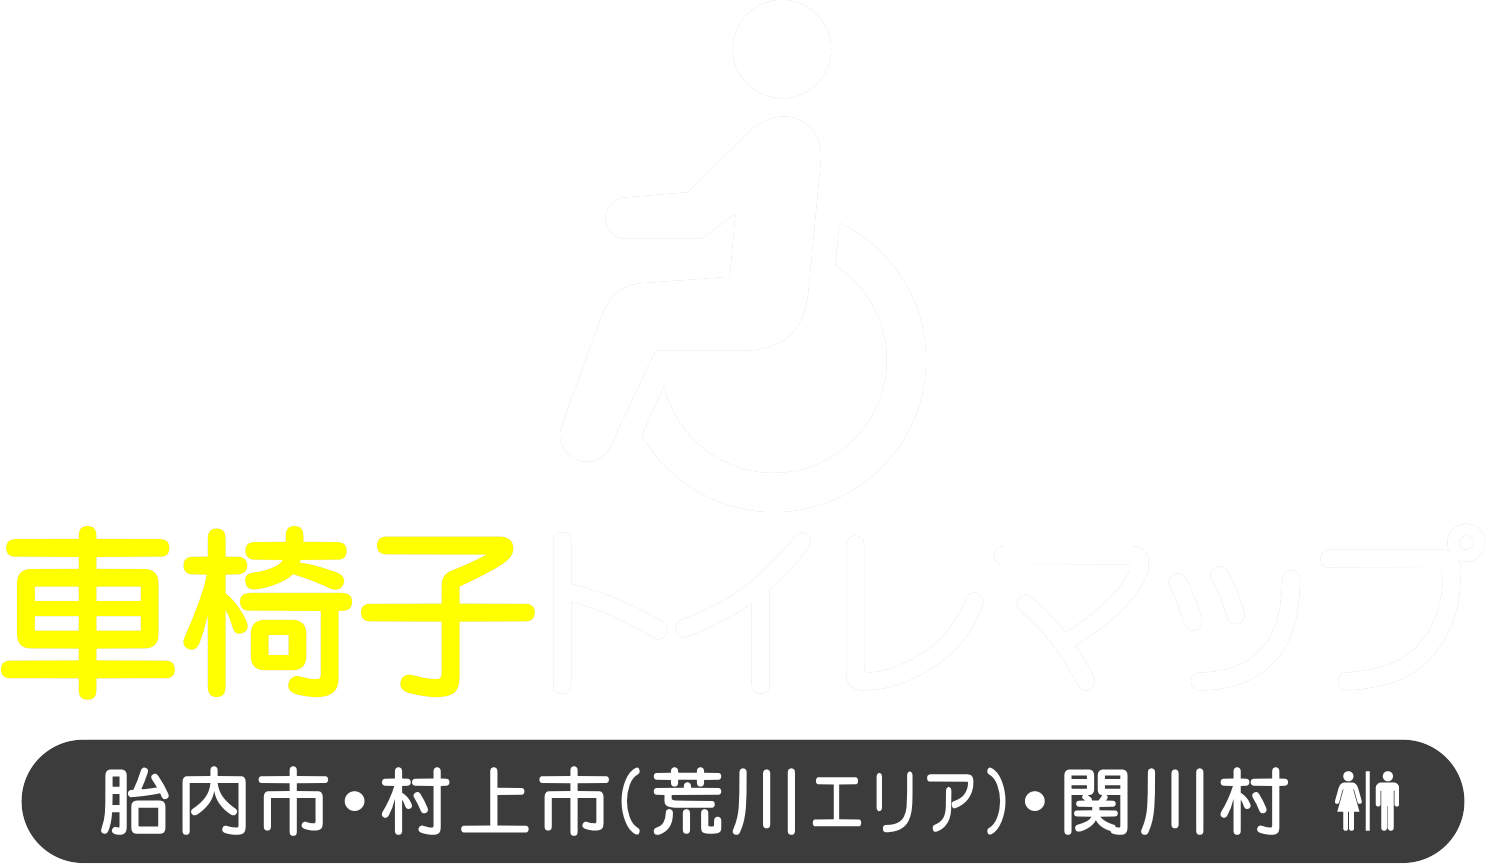 車椅子トイレマップ 施設検索